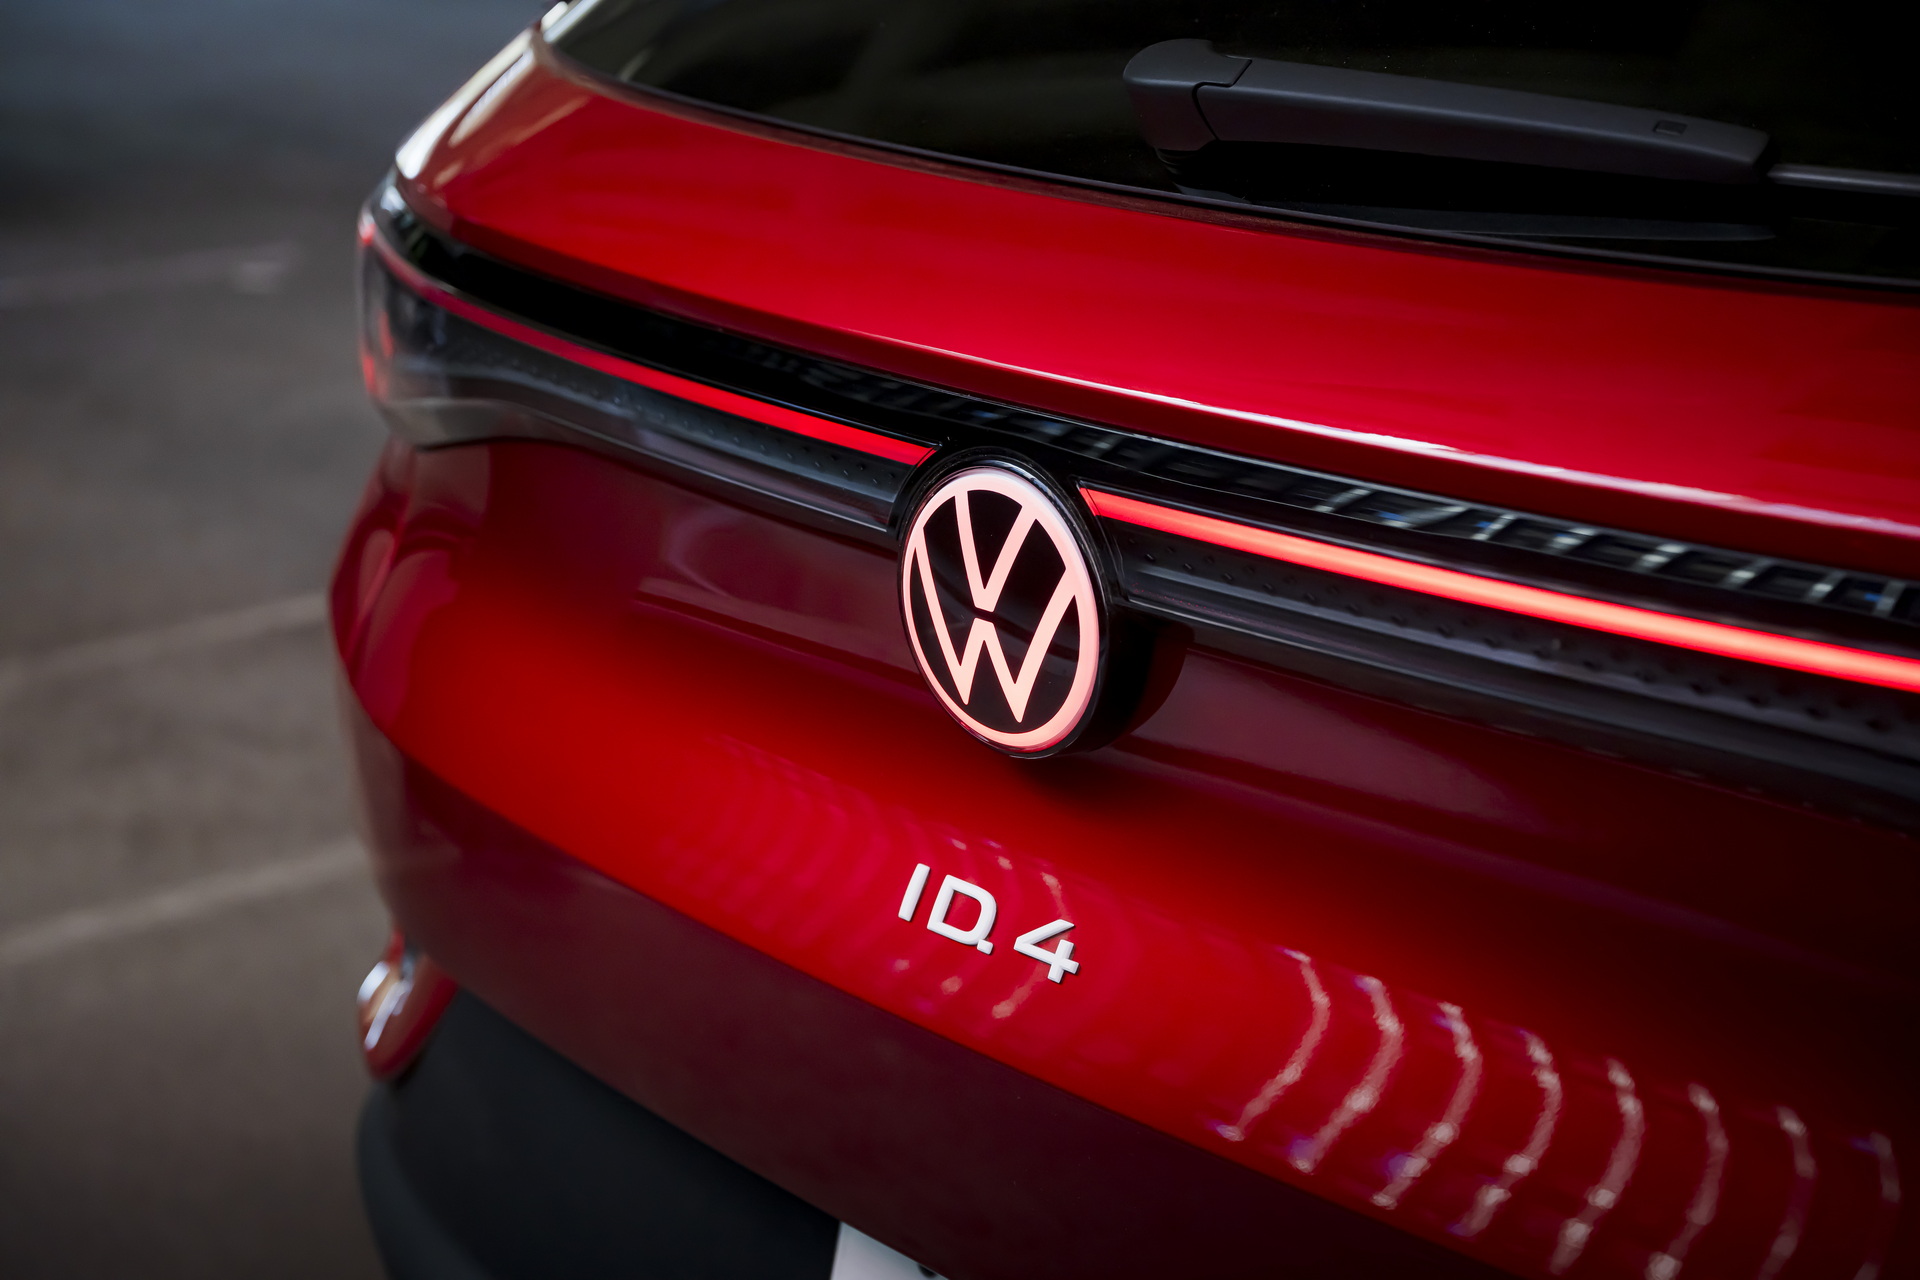 Frissítette az ID.4 szoftverét a Volkswagen, új funkciókkal bővült az autó tudása